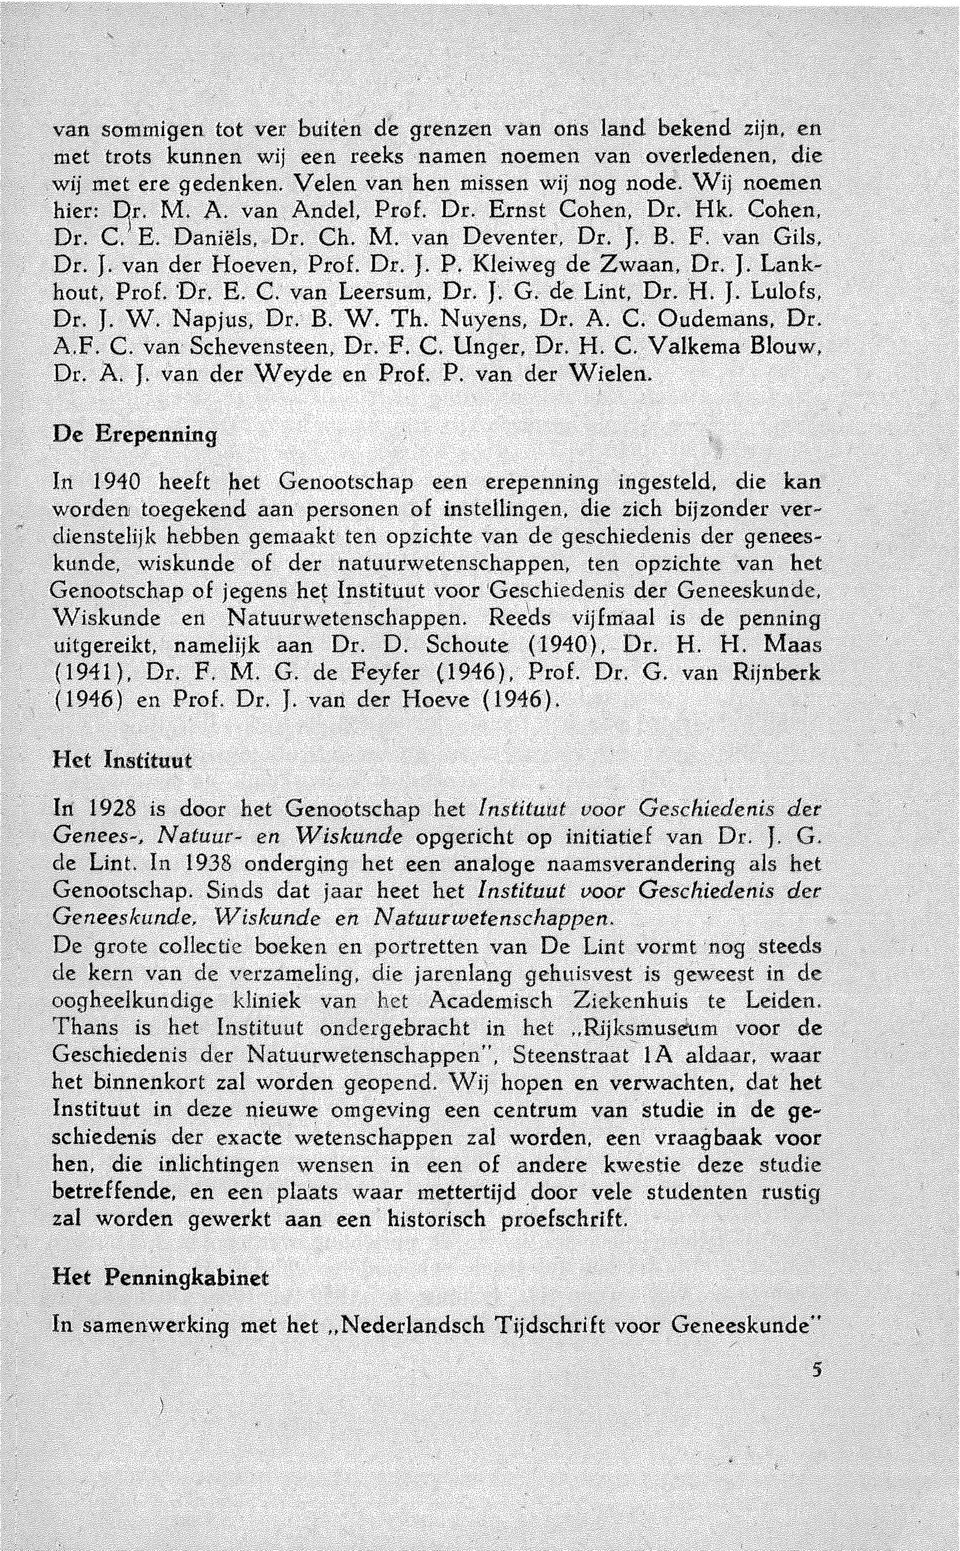 J. Lank~ hout, Prof. 'Dr. E. C. van Leersum, Dr. J~ G. de. Lint, Dr. H. J. Lulofs, Dr. J. W. Napjus, Dr. B. W. Th. Nuyens, Dr. A. C. Oudemans, Dr. A.F. C. van Schevensteen, Dr. F. C. Unger, Dr. H. C. Valkema Blouw, Dr.